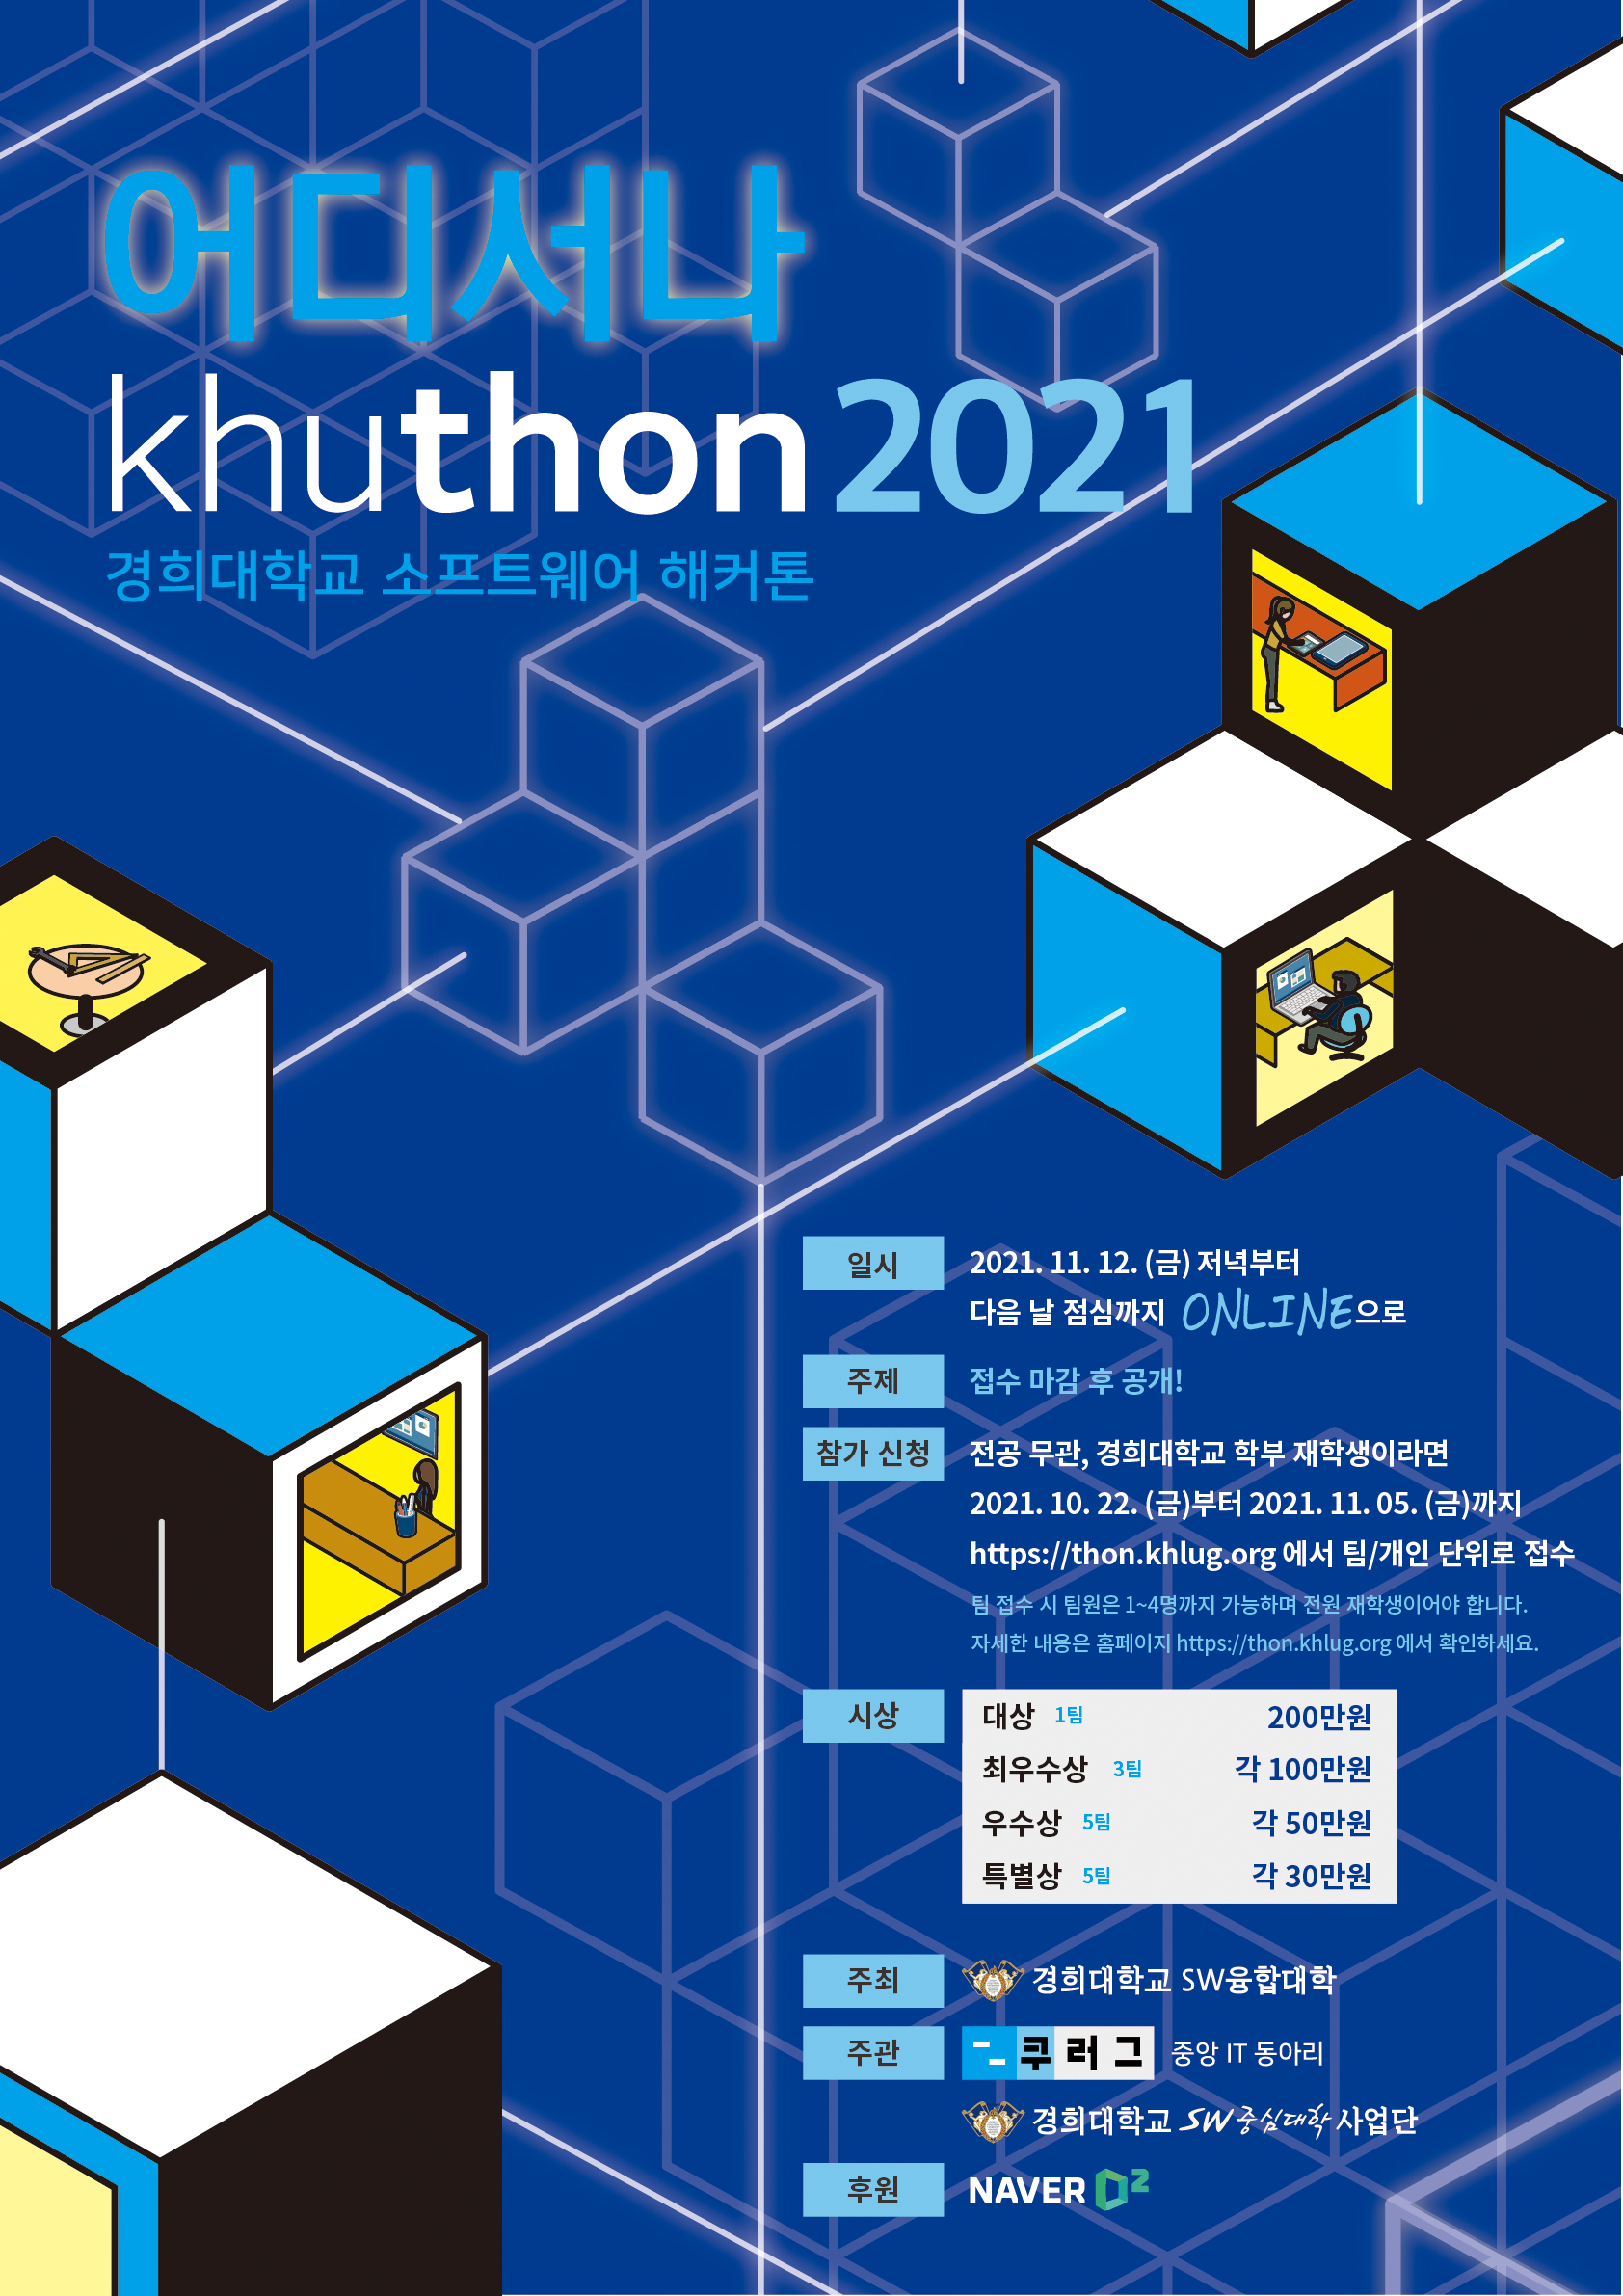 Khuthon 2021(21.11.12,경희대학교 재학생, 비대면) : Sw중심대학협의회(소프트웨어중심대학협의회)